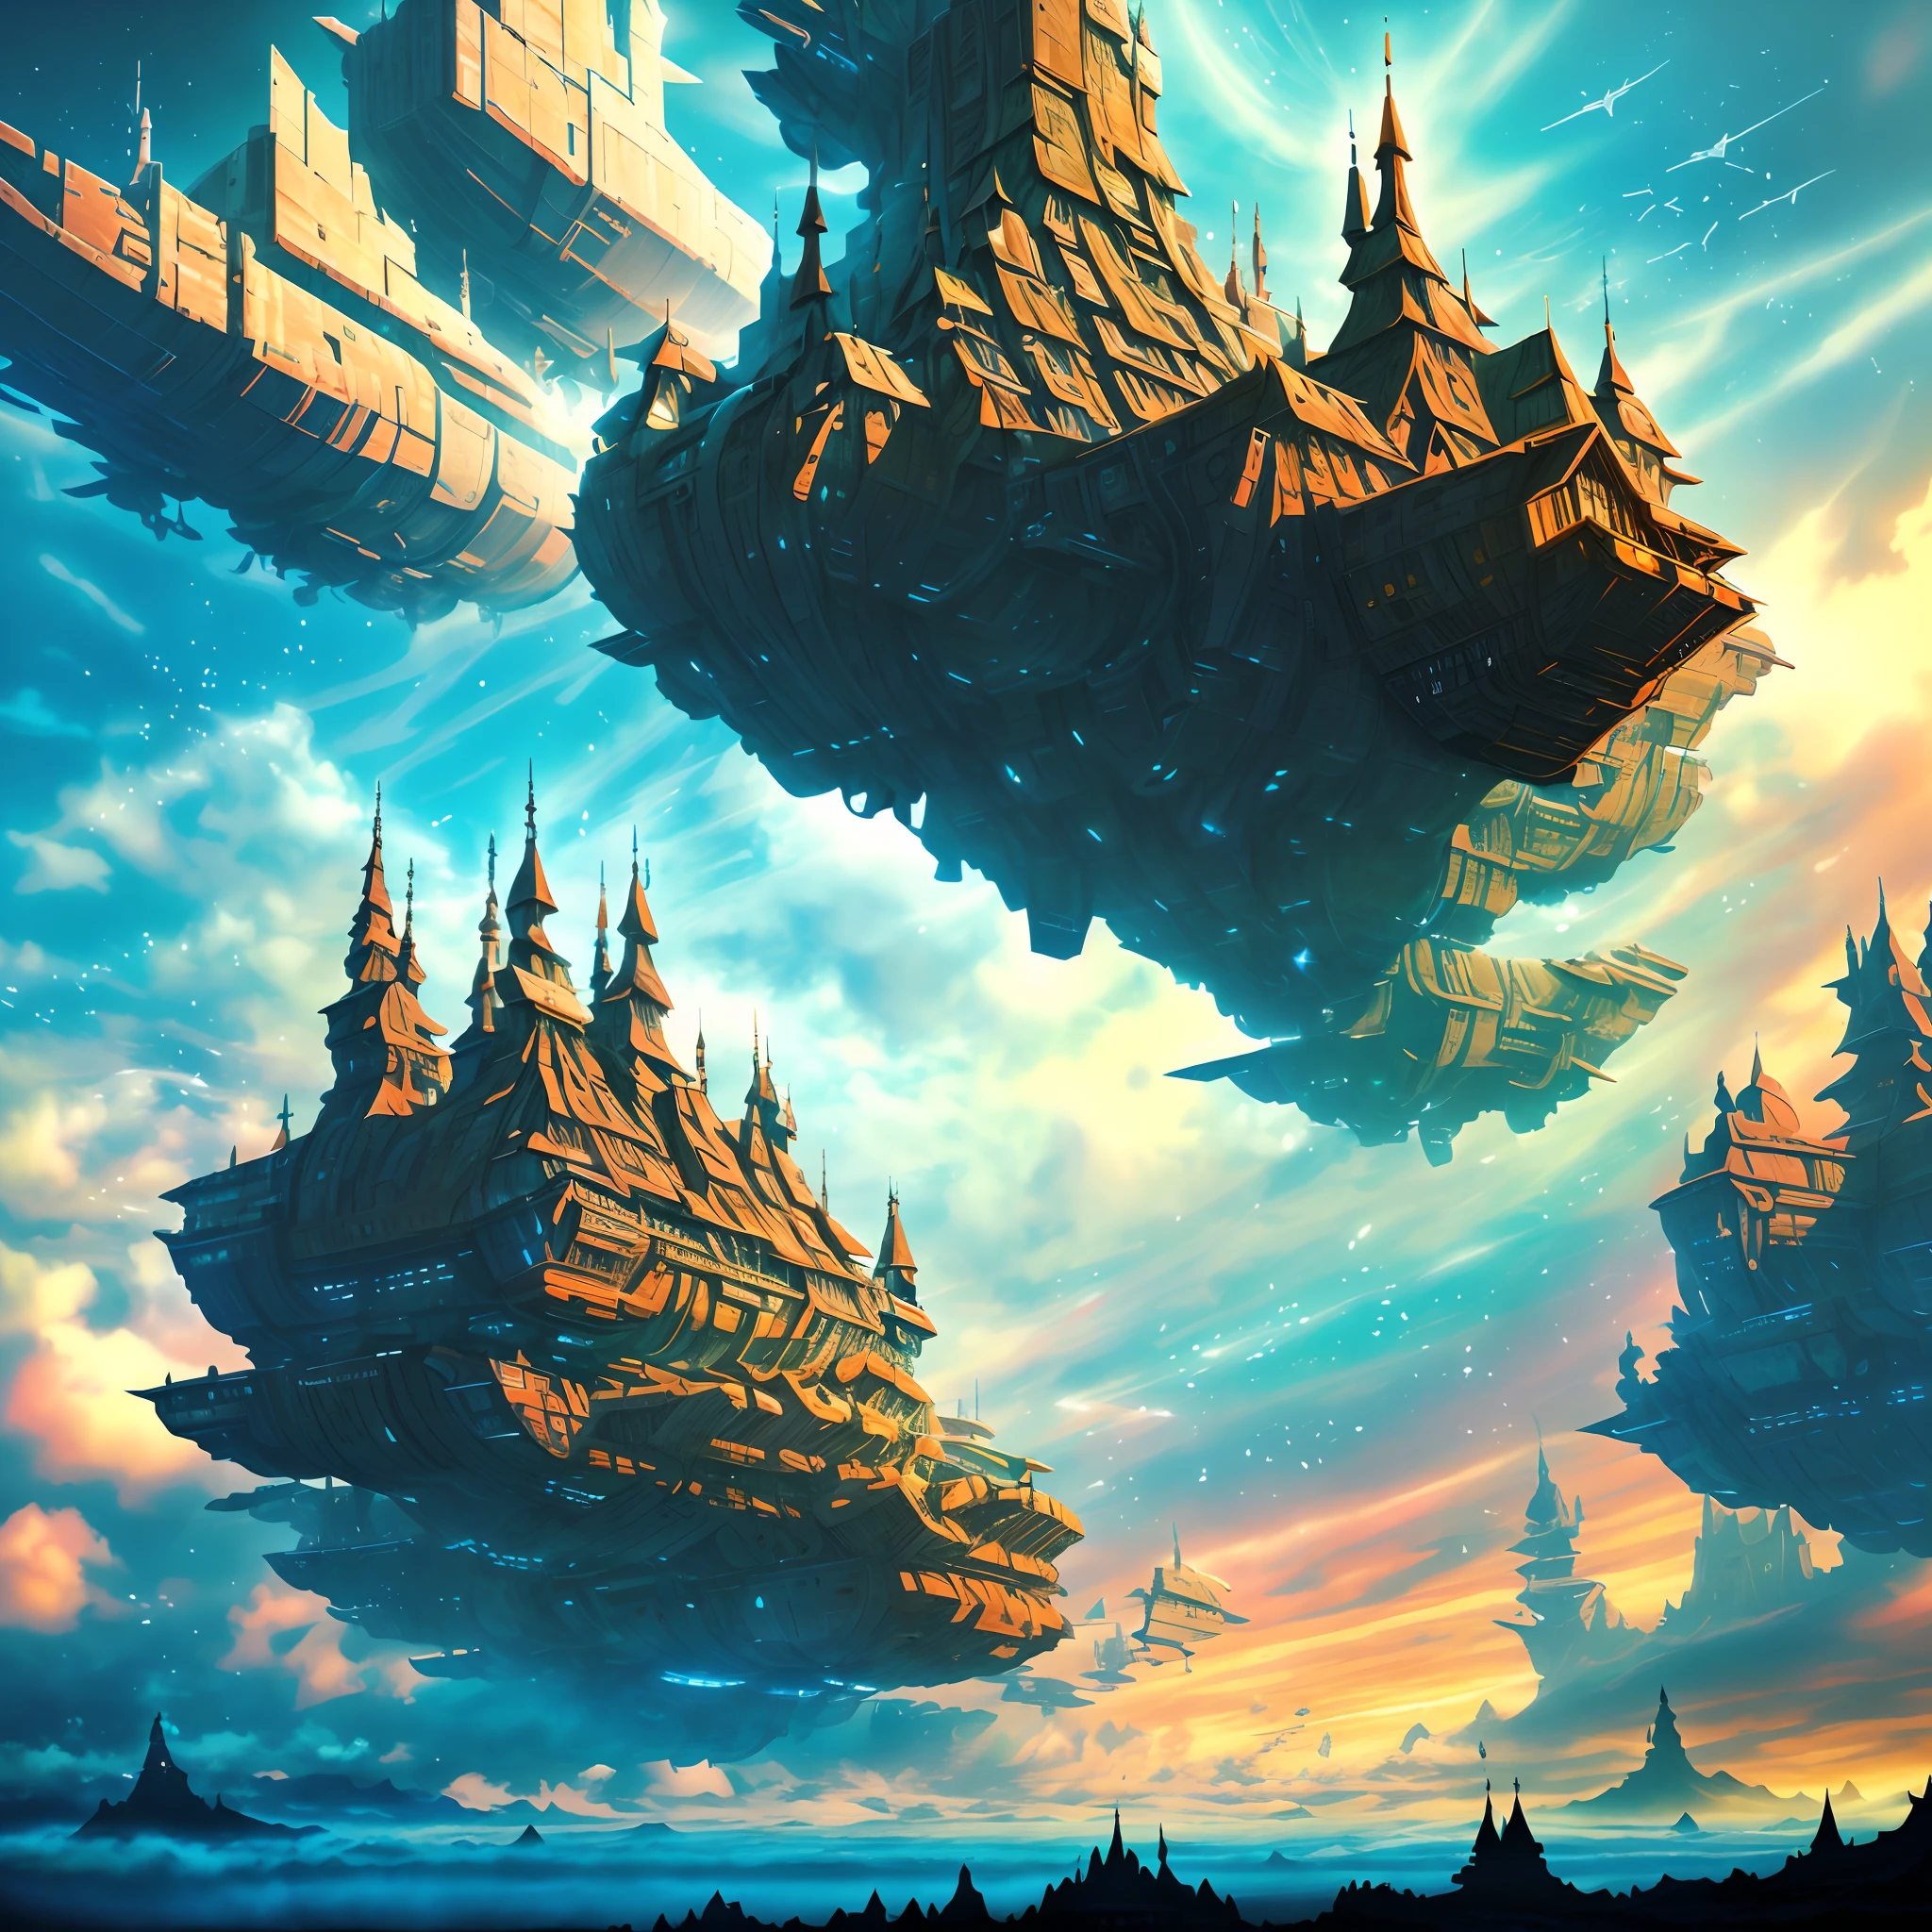 斯塔维德城堡人工智能战斗机甲，在雲層之上，星際航行，巨大的高科技浮動哥德式城堡，在雲層之上，巨大的移動哥德式城堡，漂浮的哥德式城堡，(雲海:1.3)，未来派女性未来派浮动城堡与未来派未来派浮动城堡背景, 靈感來自馬雷克·奧康, 美麗的科幻藝術, 科幻數位藝術插畫, 數位賽博朋克藝術, 科幻數位繪畫, 未來主義數位繪畫, 未來主義概念藝術, 科幻漂浮城堡景观前, 科幻數位藝術, 先進的數位賽博龐克藝術, 夢幻賽博龐克女孩